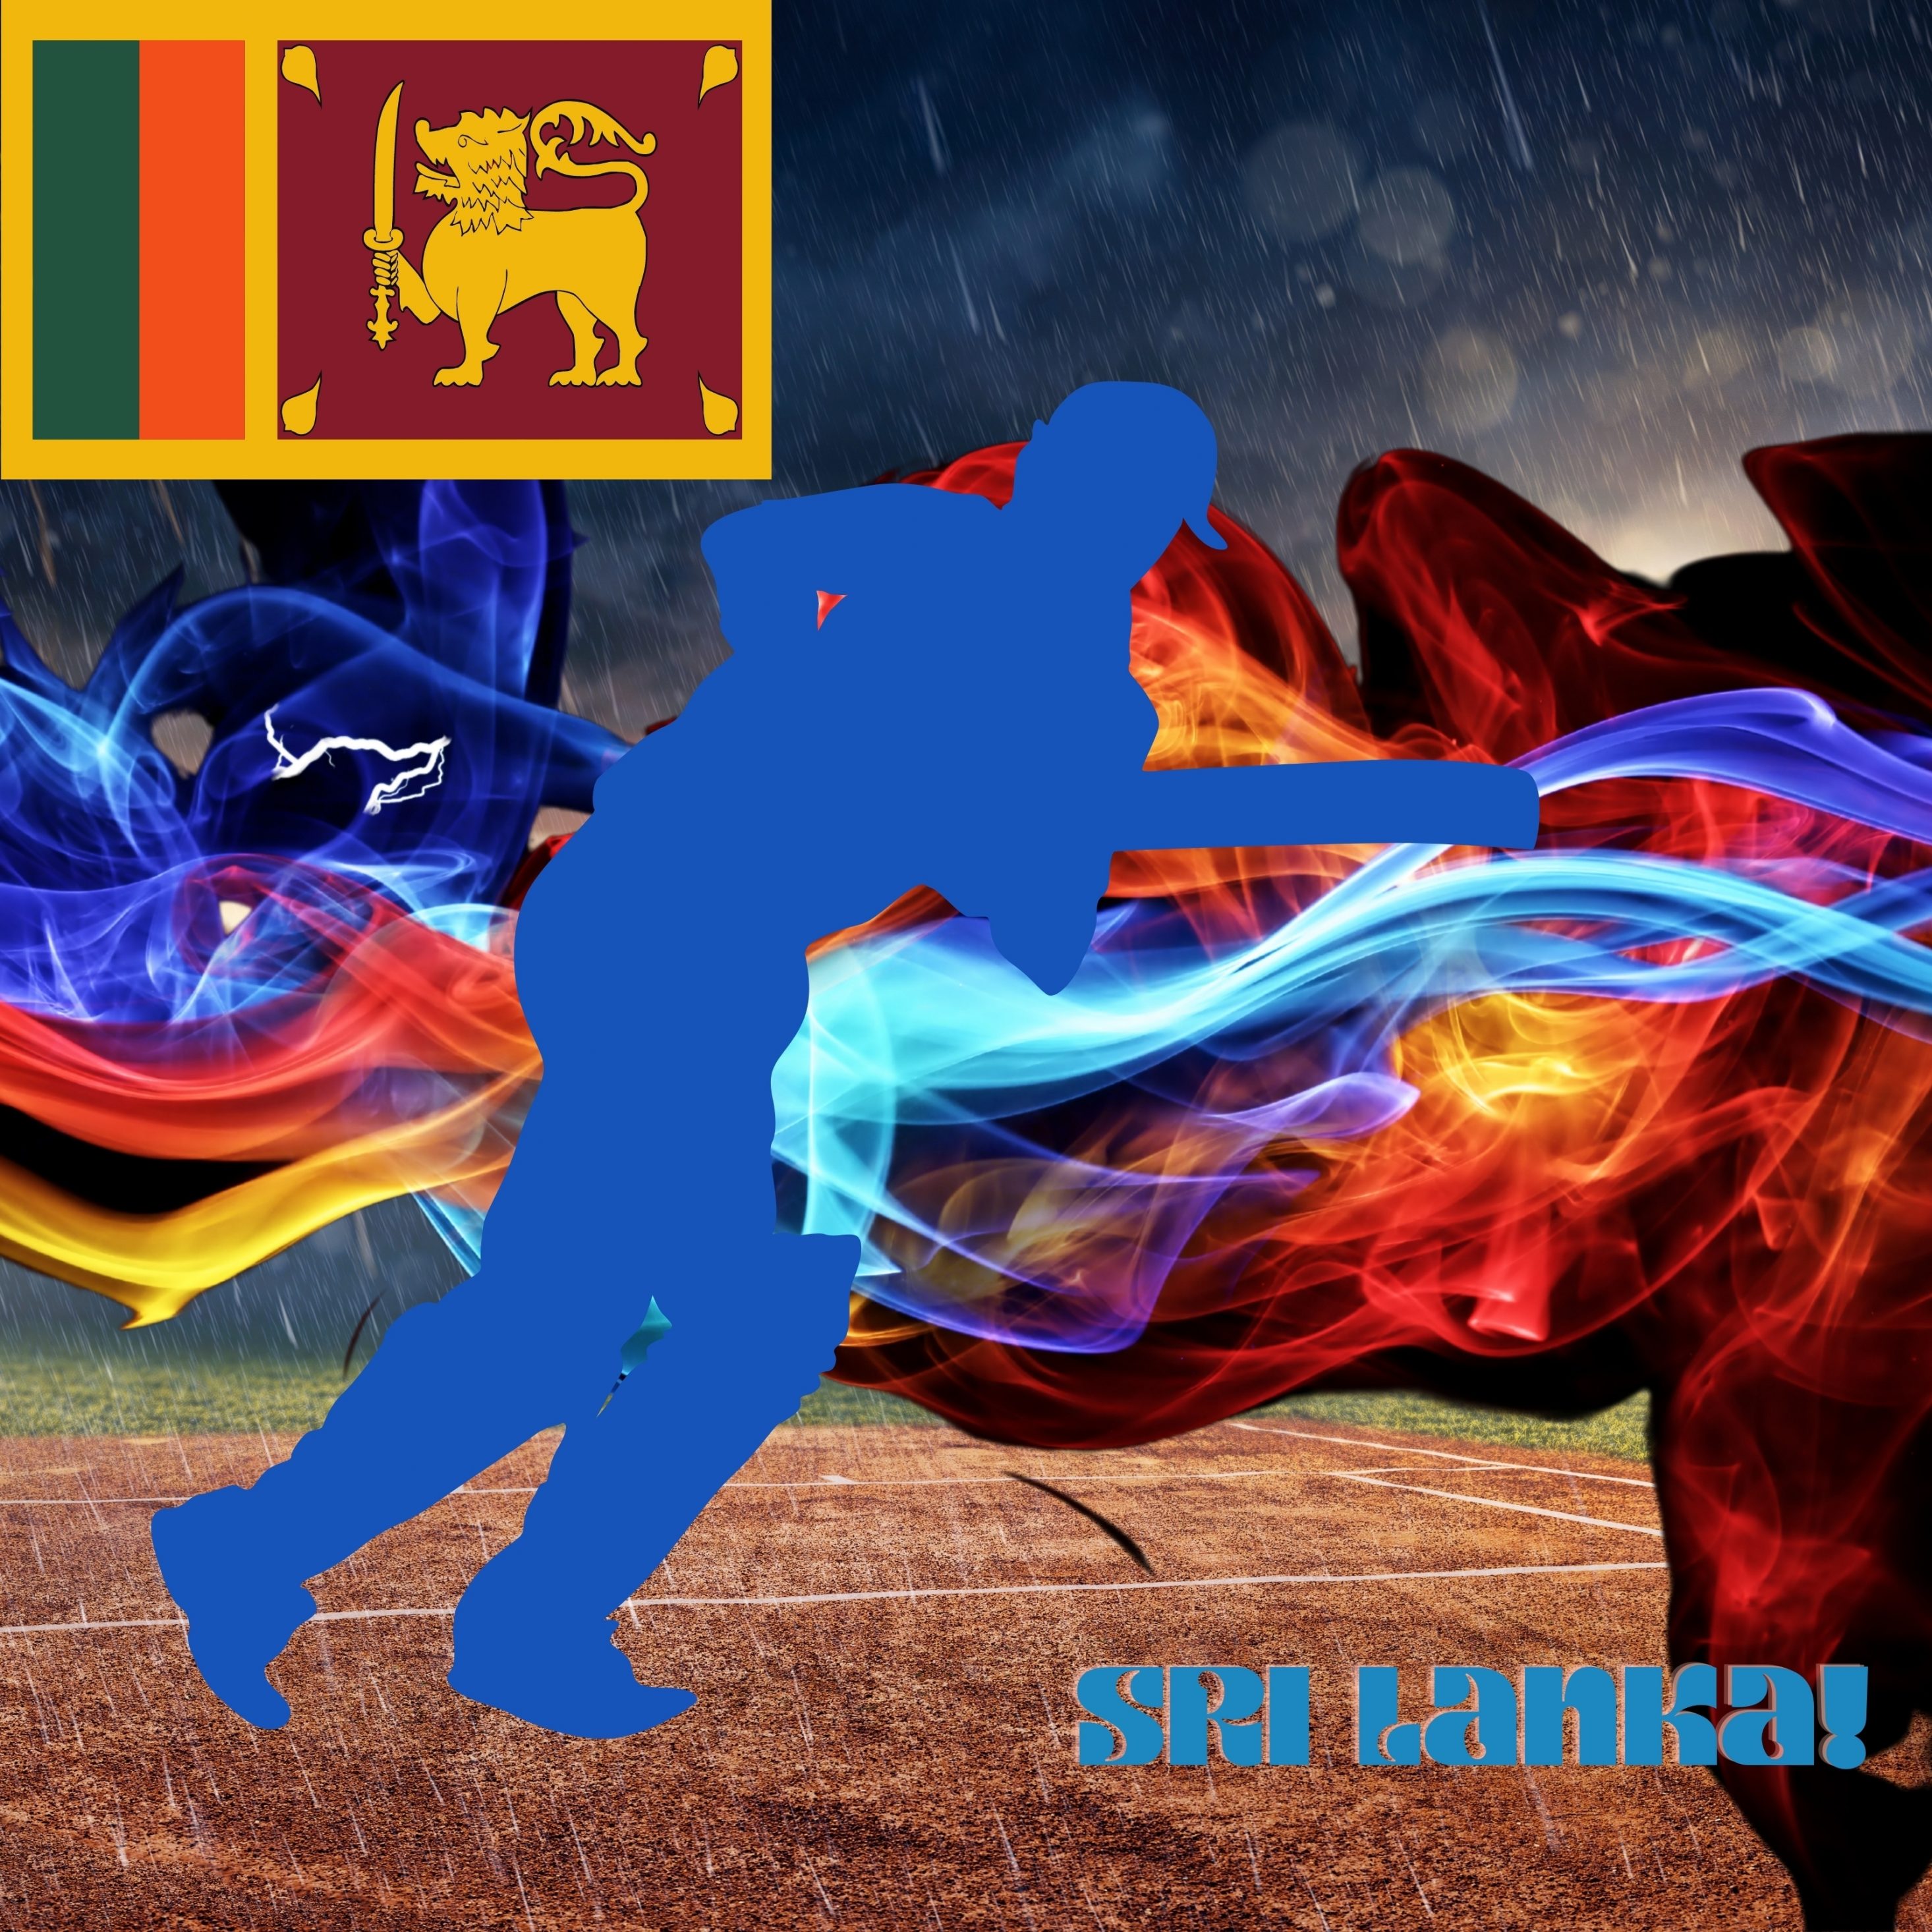 2932x2932 iPad Pro wallpaper 4k Sri Lanka Cricket Stadium iPad Wallpaper 2932x2932 pixels resolution